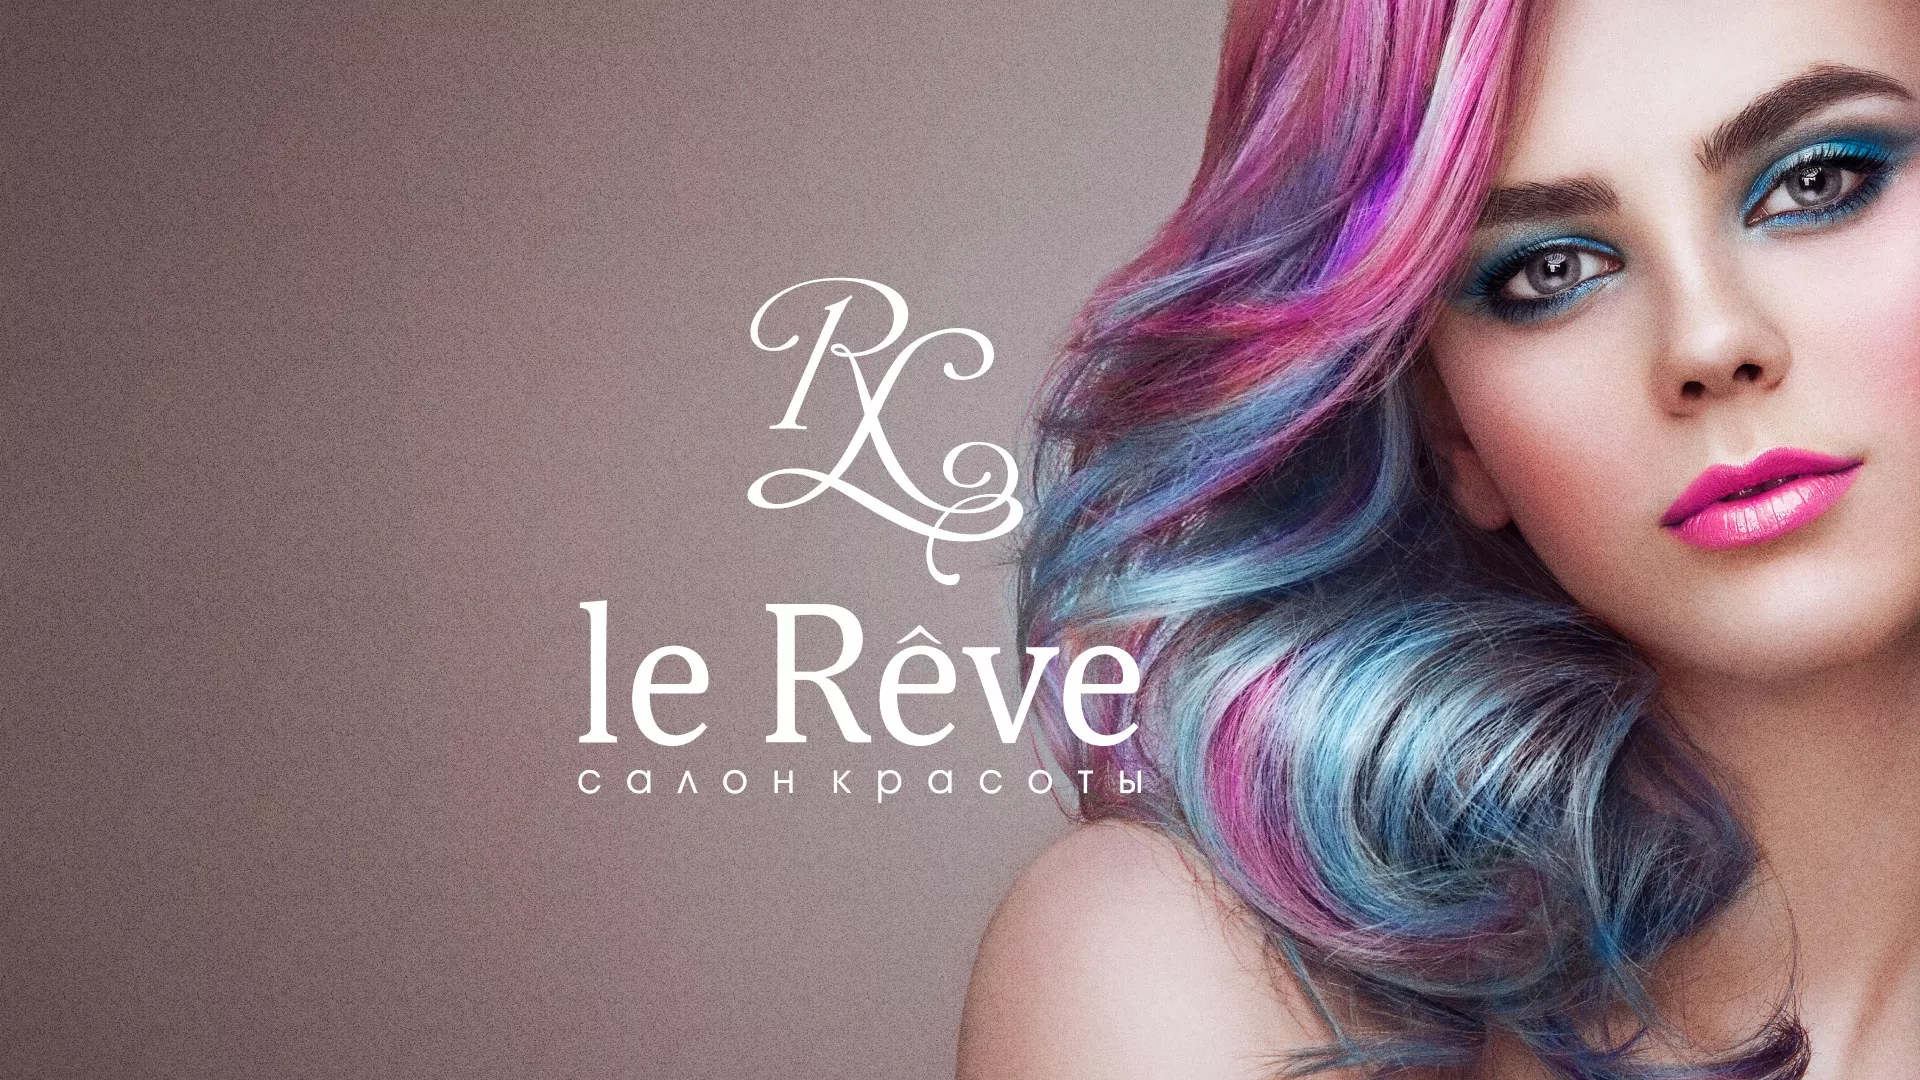 Создание сайта для салона красоты «Le Reve» в Галиче